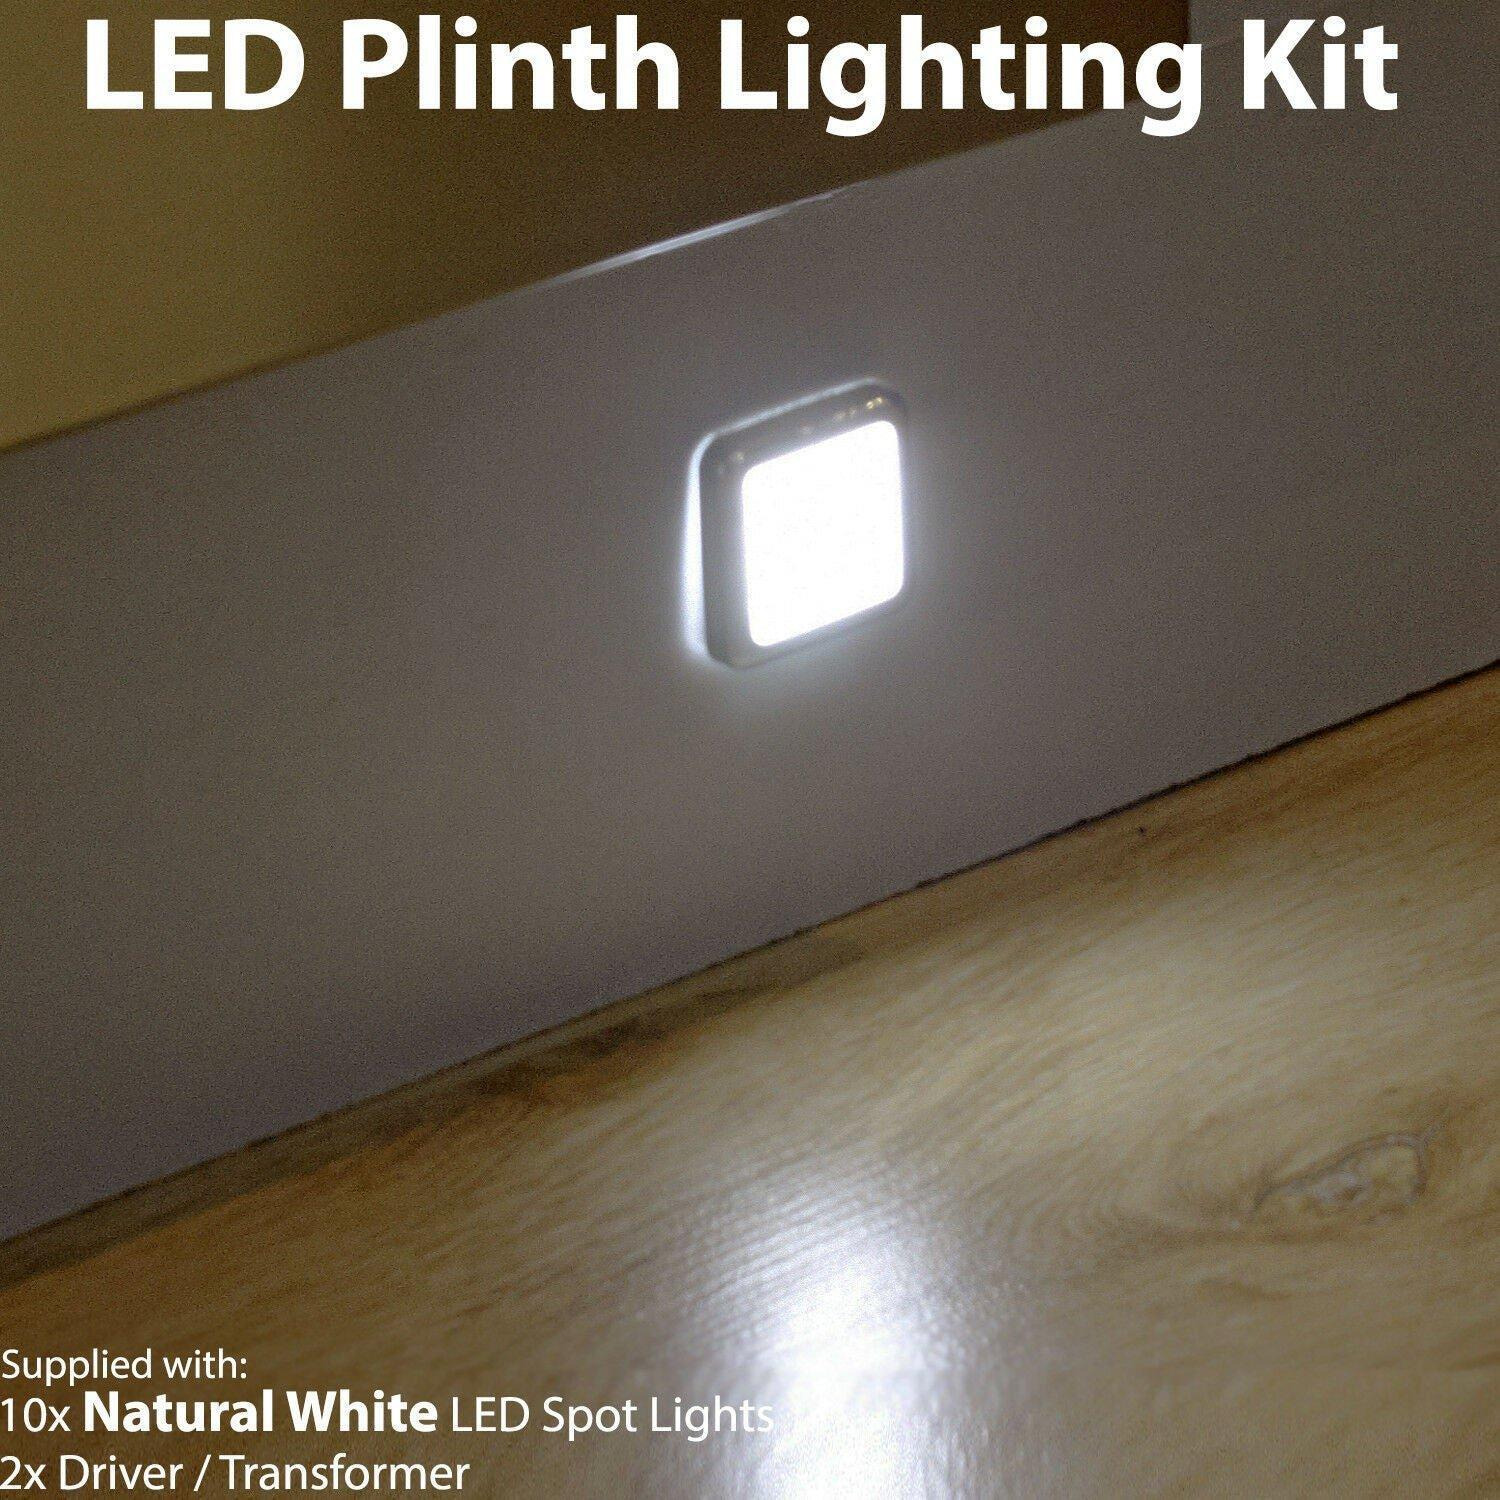 Square LED Plinth Light Kit 10 NATURAL WHITE Spotlights Kitchen Bathroom Panel - image 1